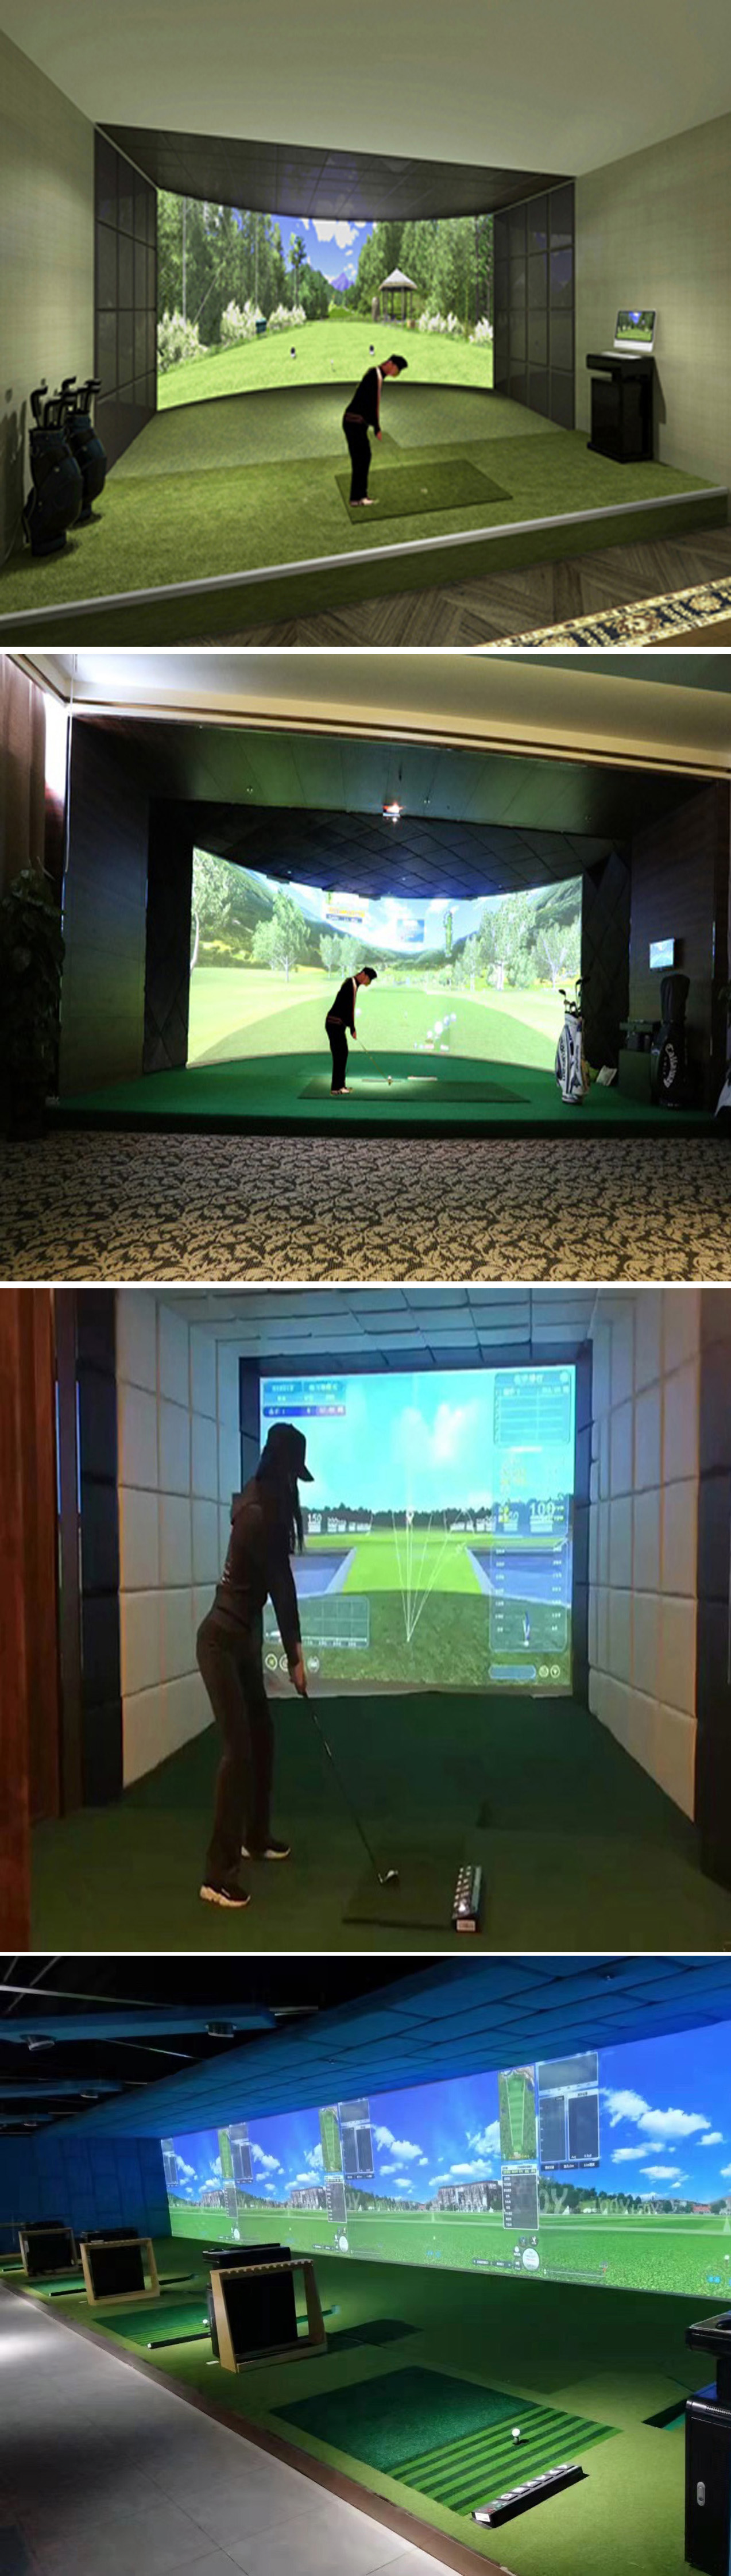 模拟高尔夫设备 102.jpg